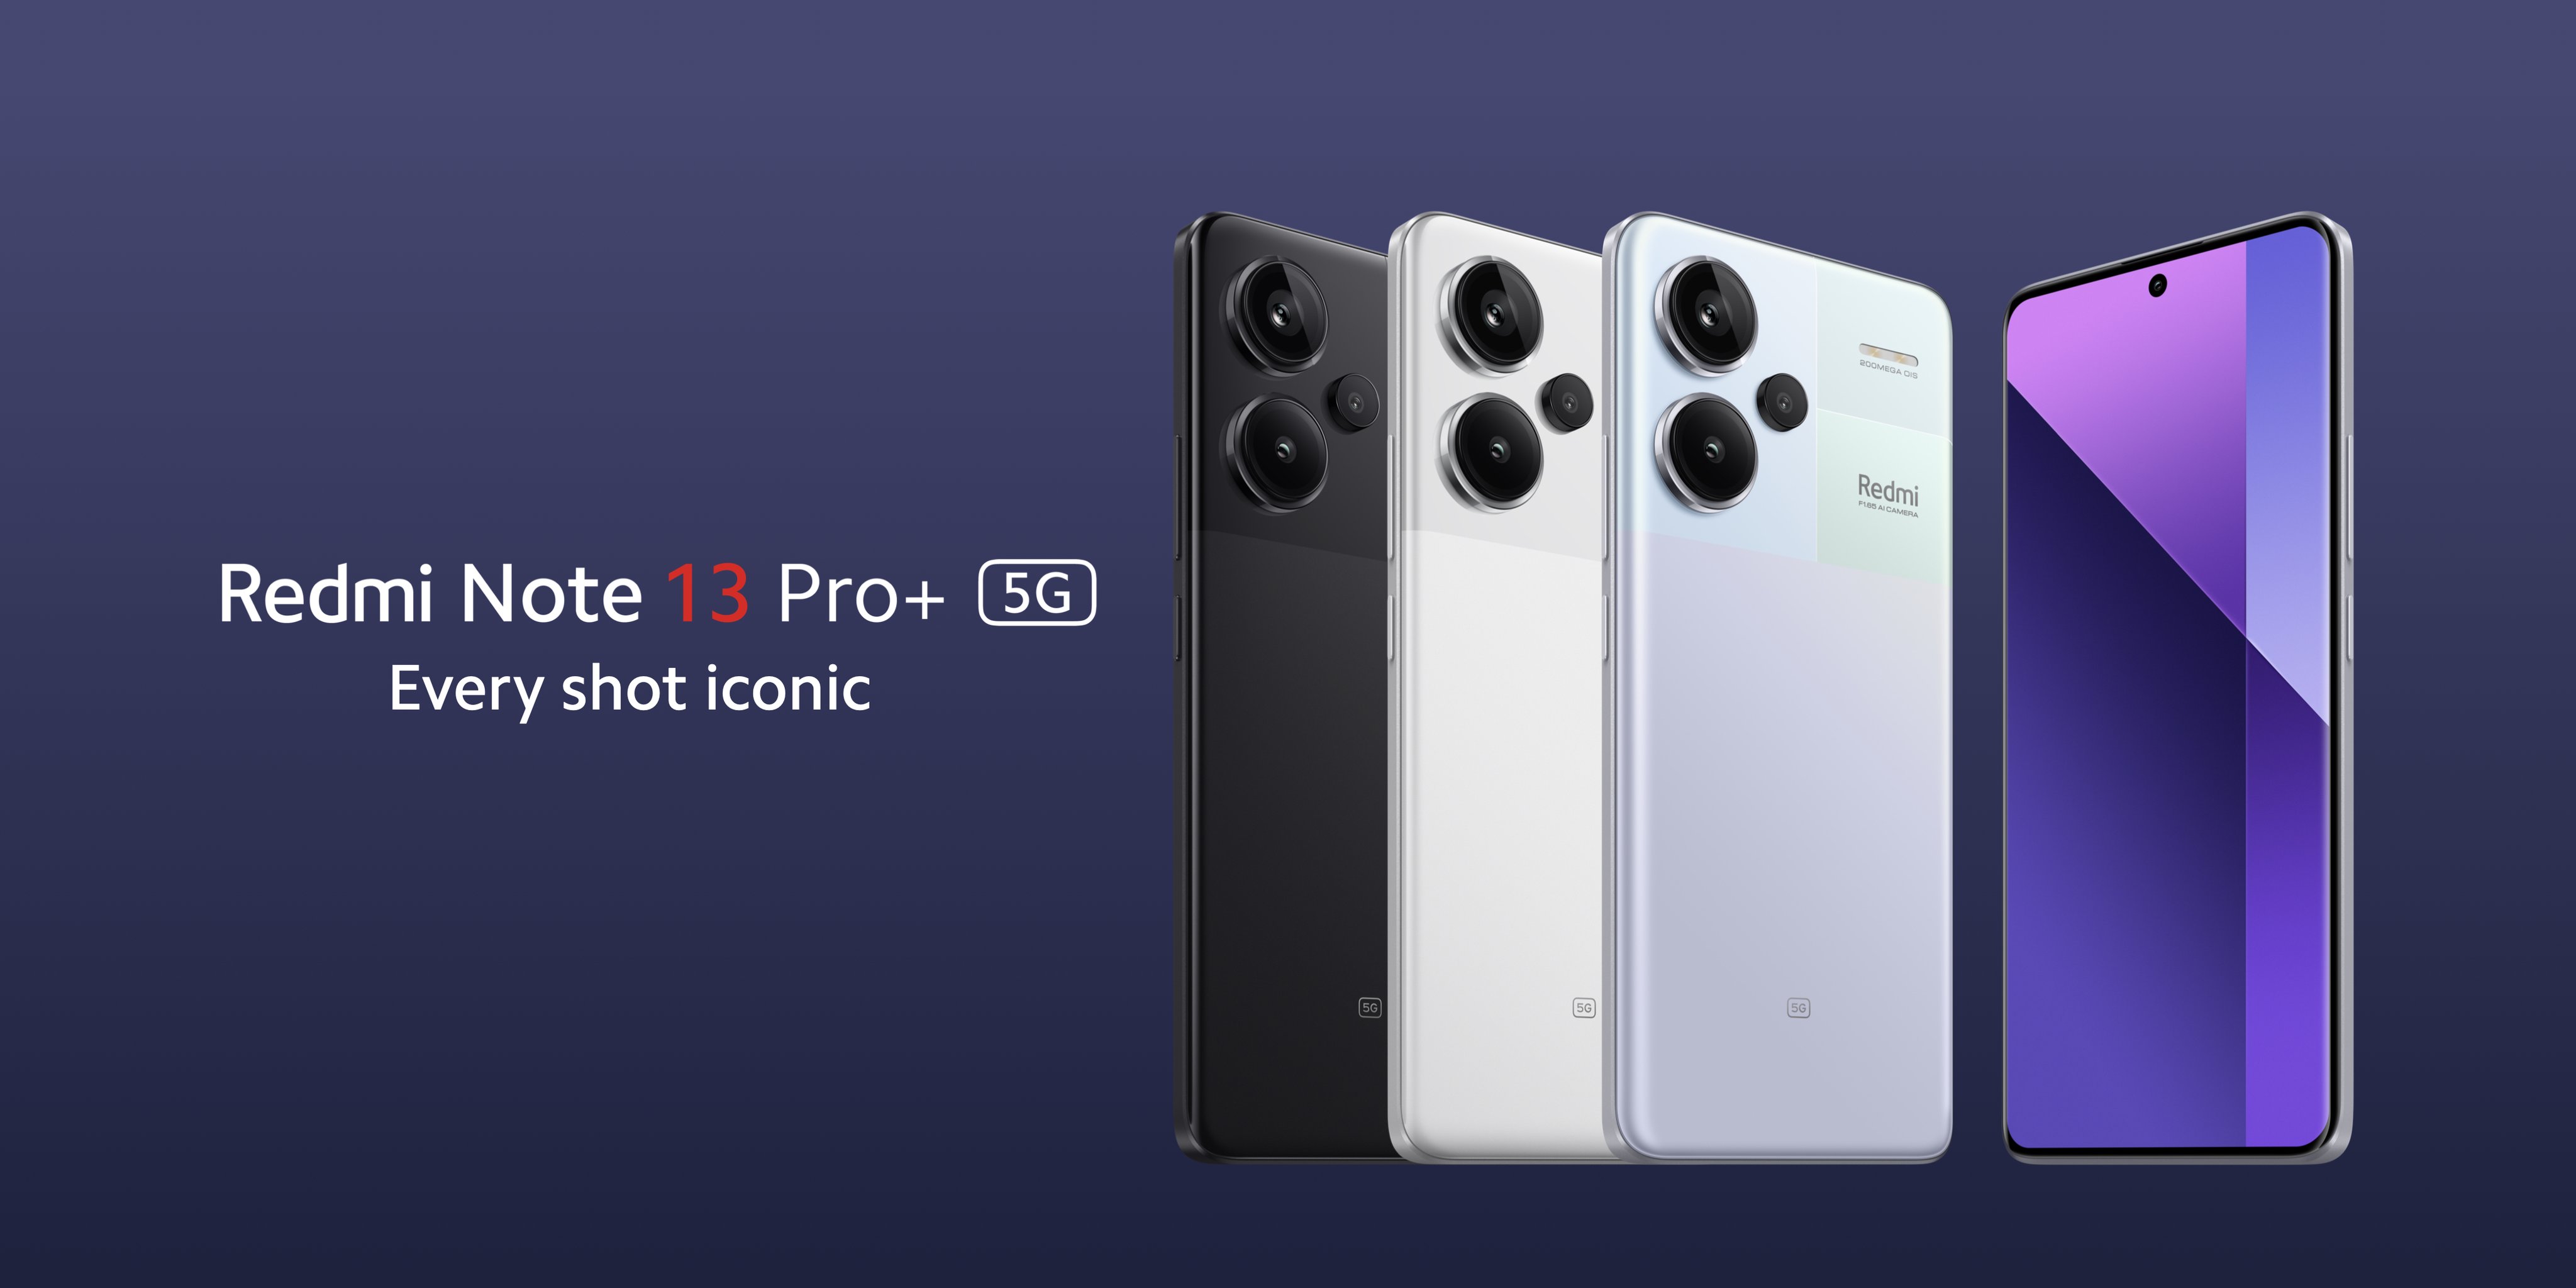 Redmi Note 13 Pro+ z aparatem 200 MP, układem MediaTek Dimensity 7200 Ultra i ładowaniem 120 W został wydany w Europie